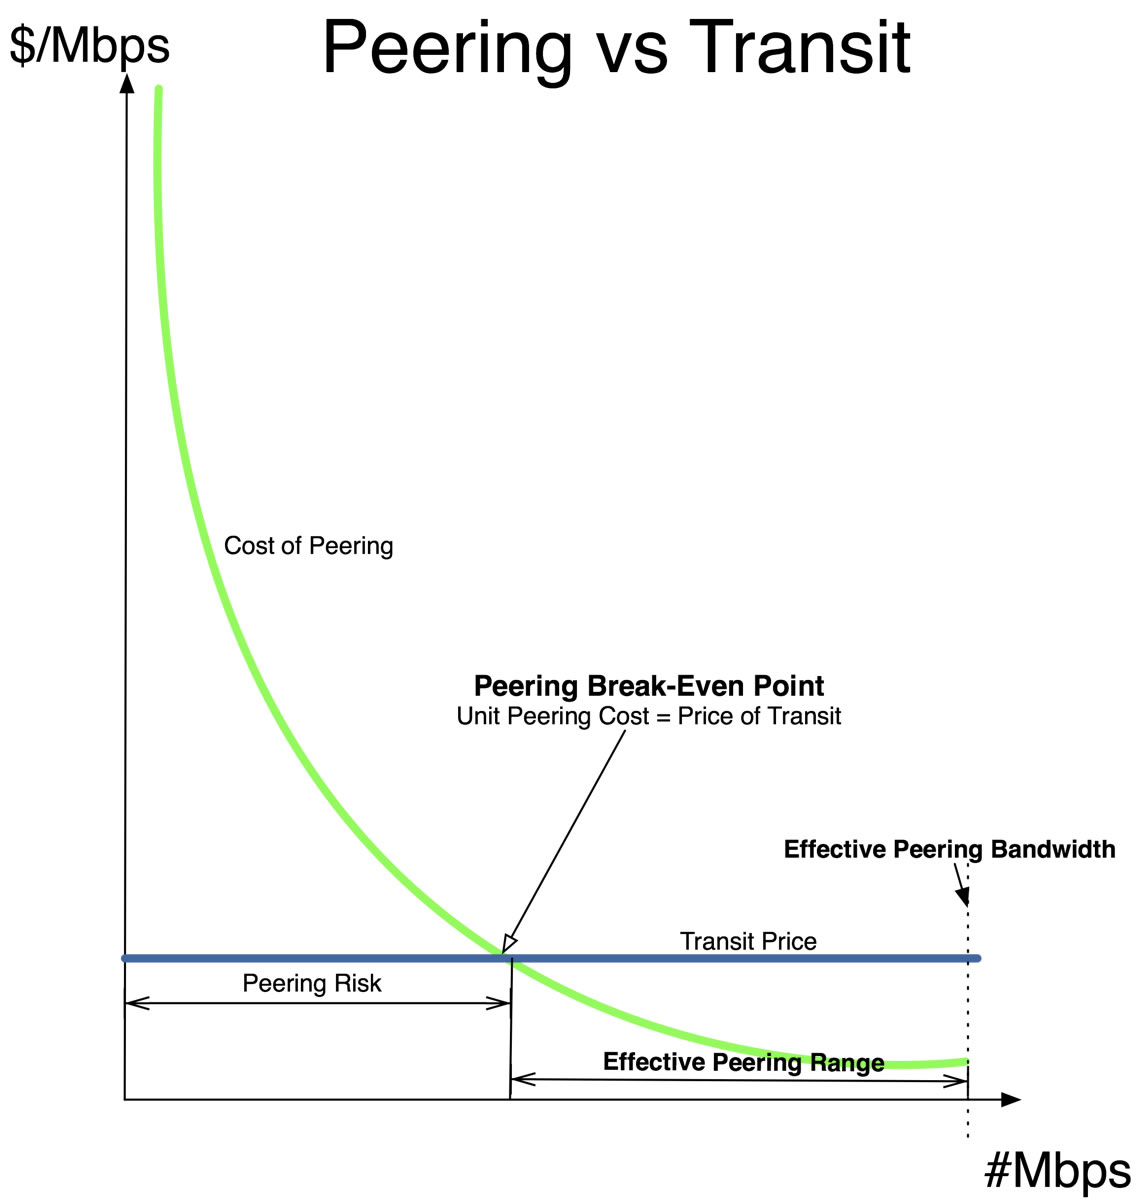 Peering versus Transit